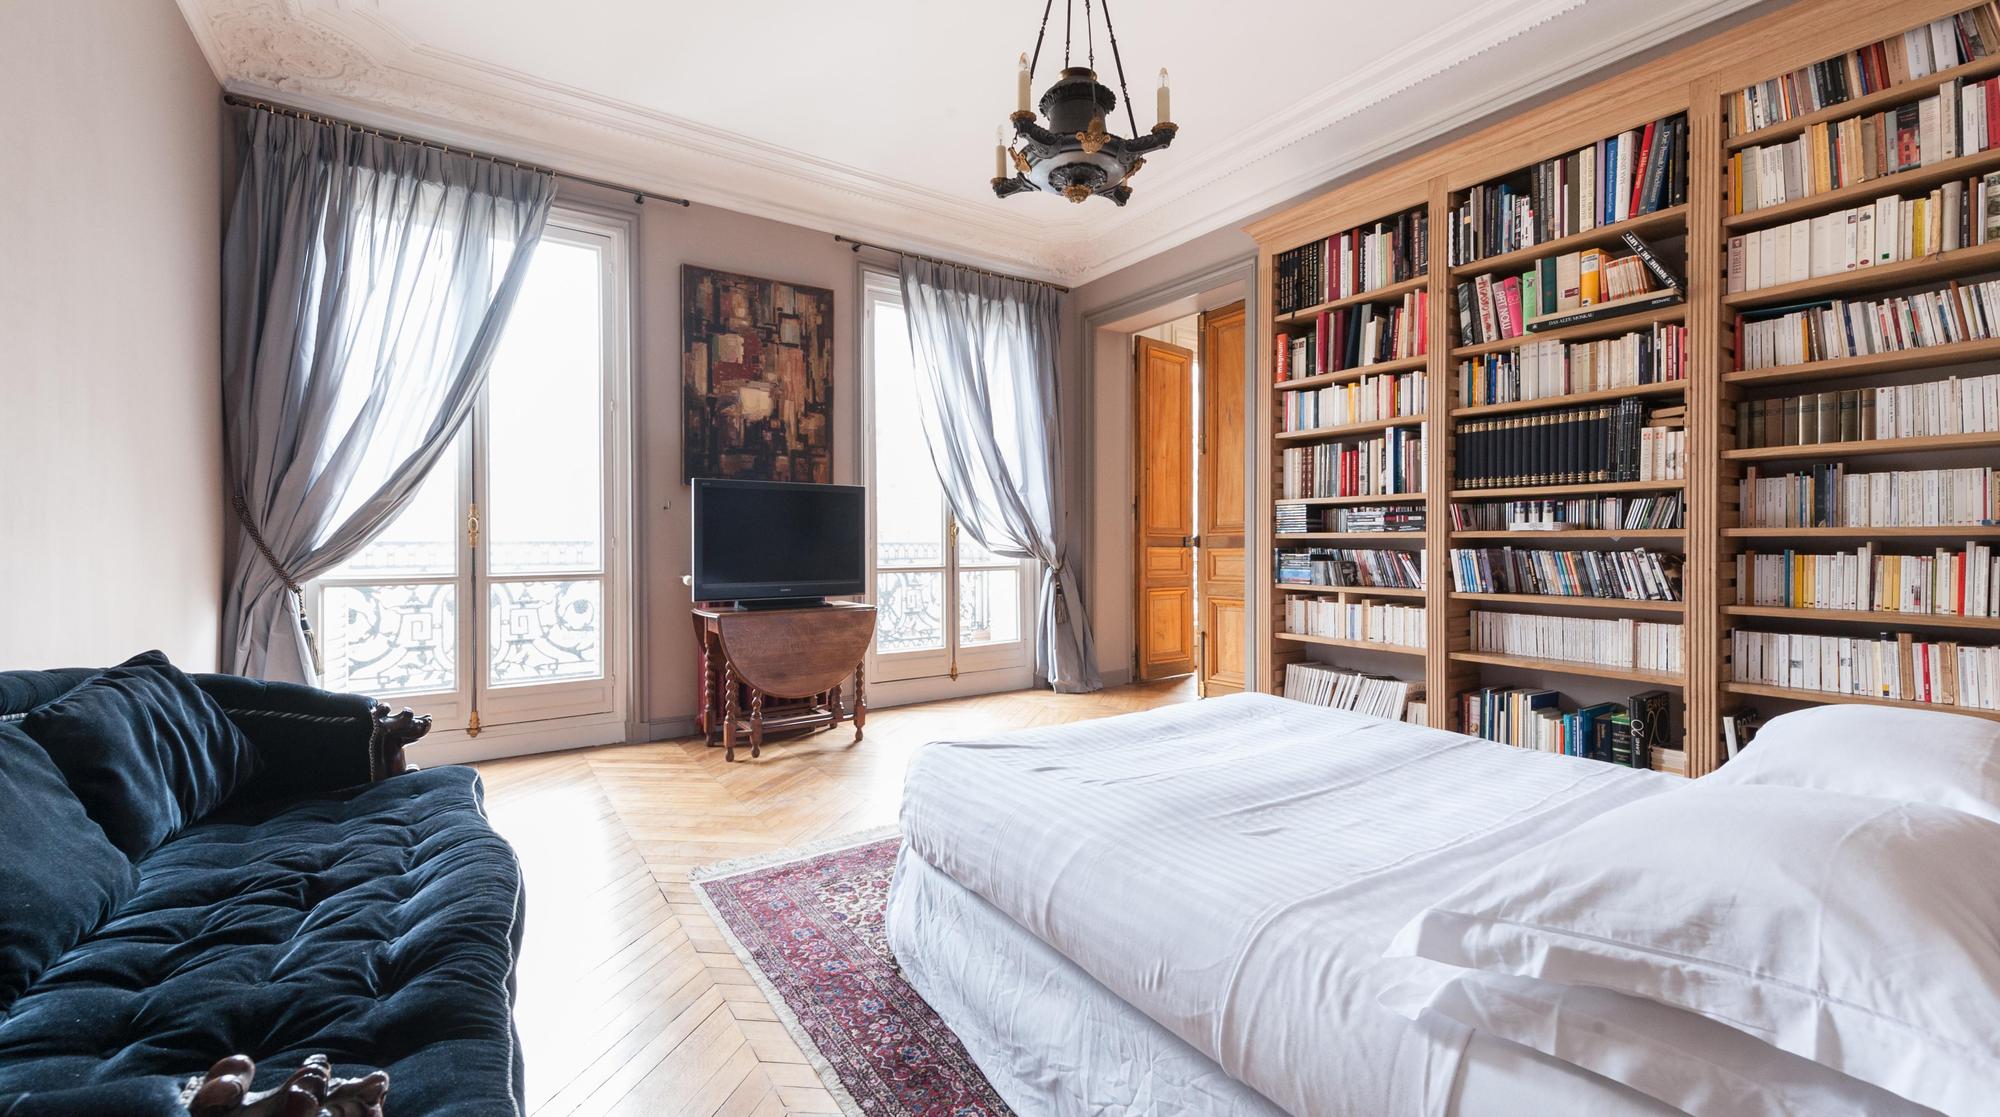 Premium Apartments in Paris